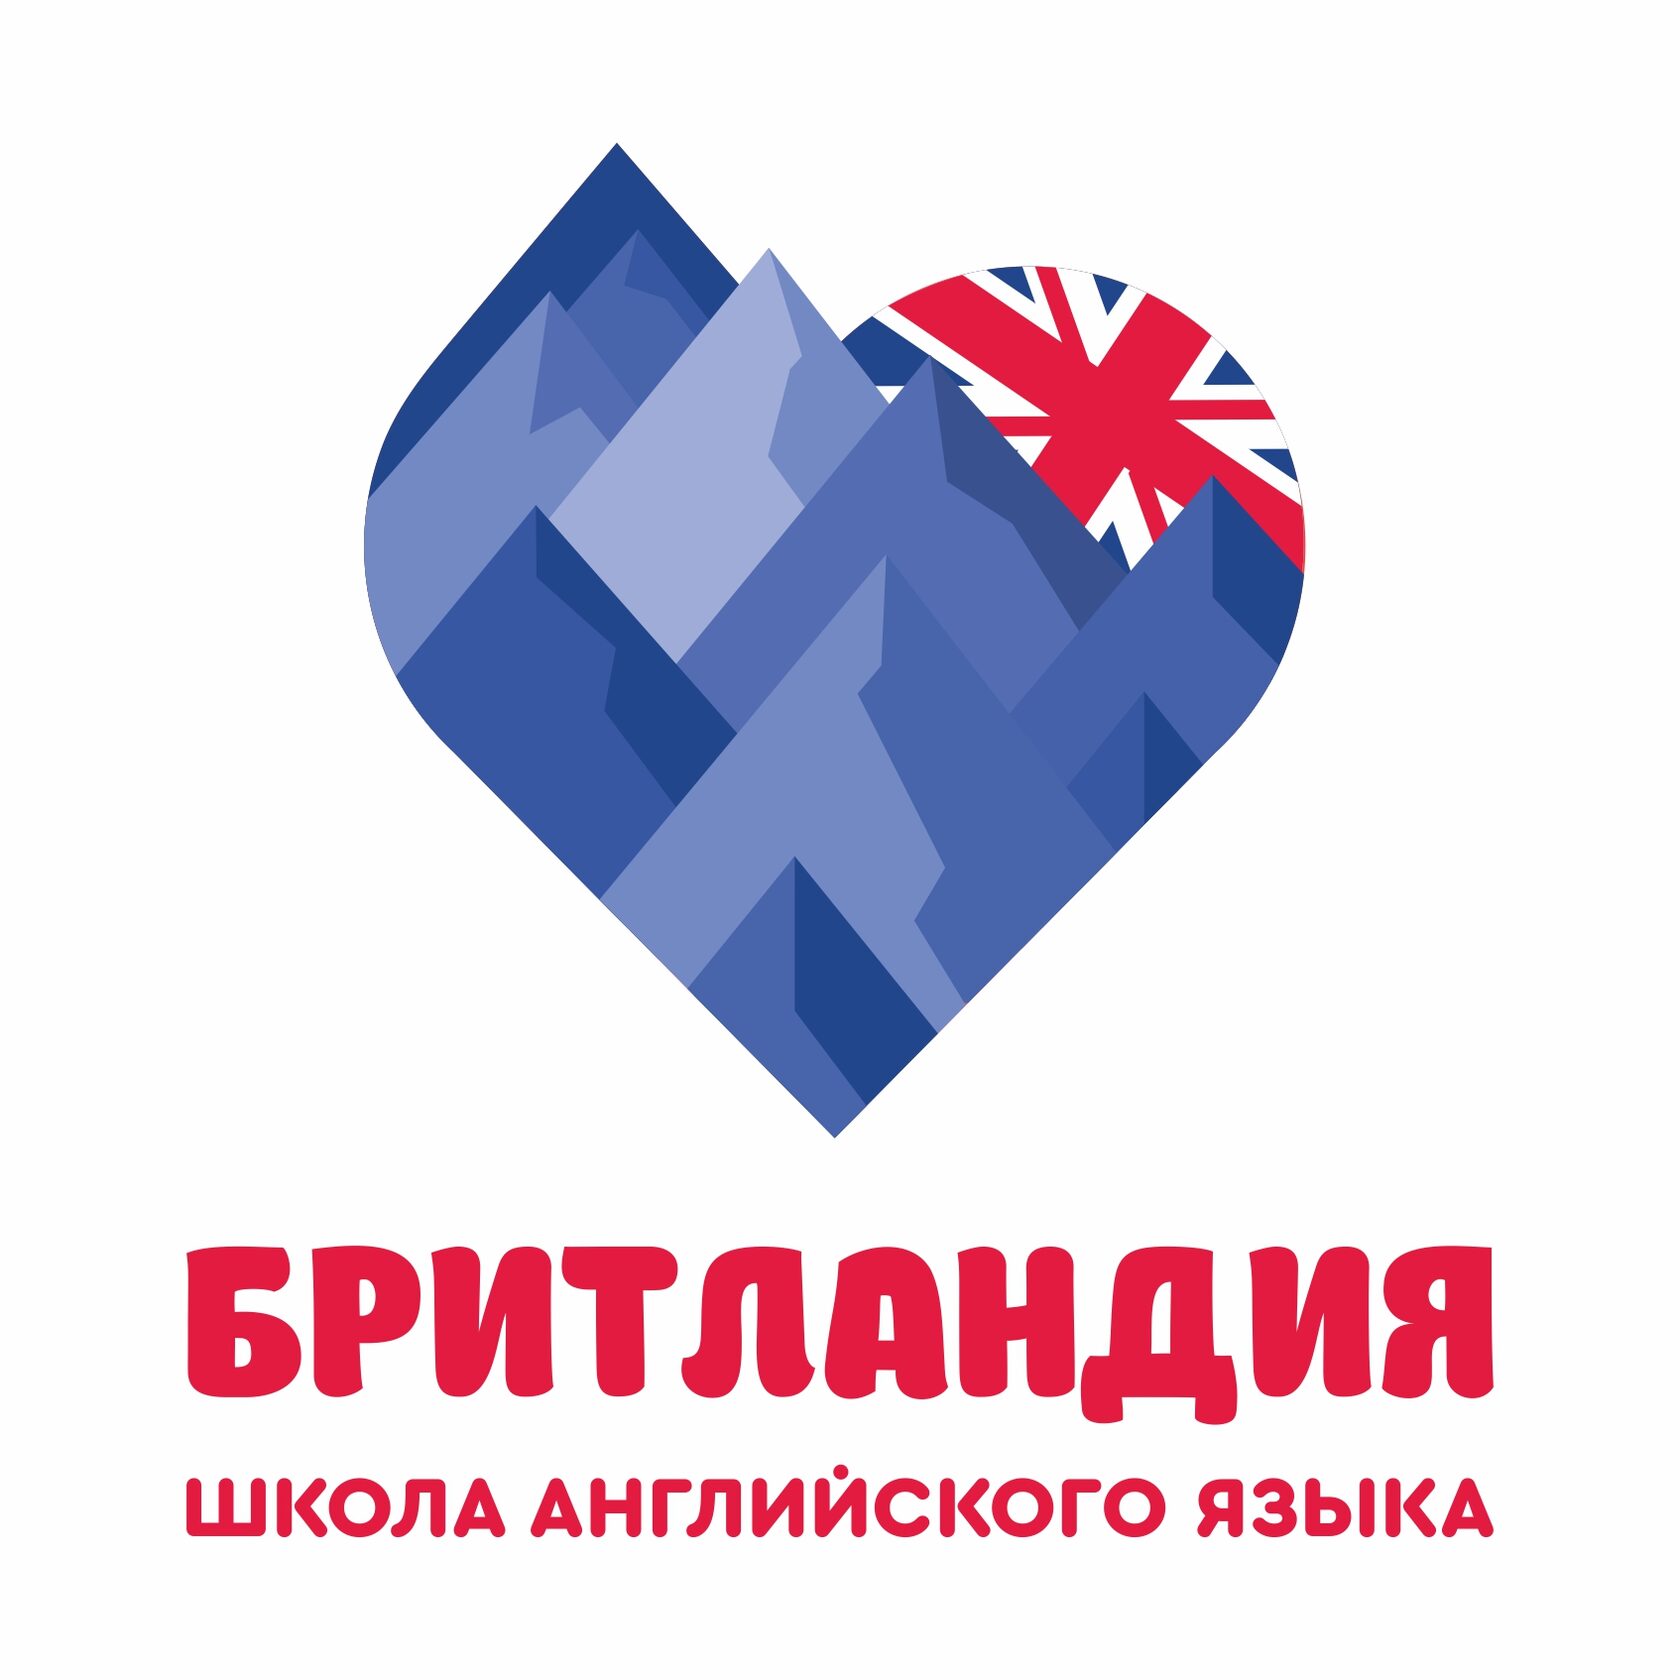 Бритландия лого